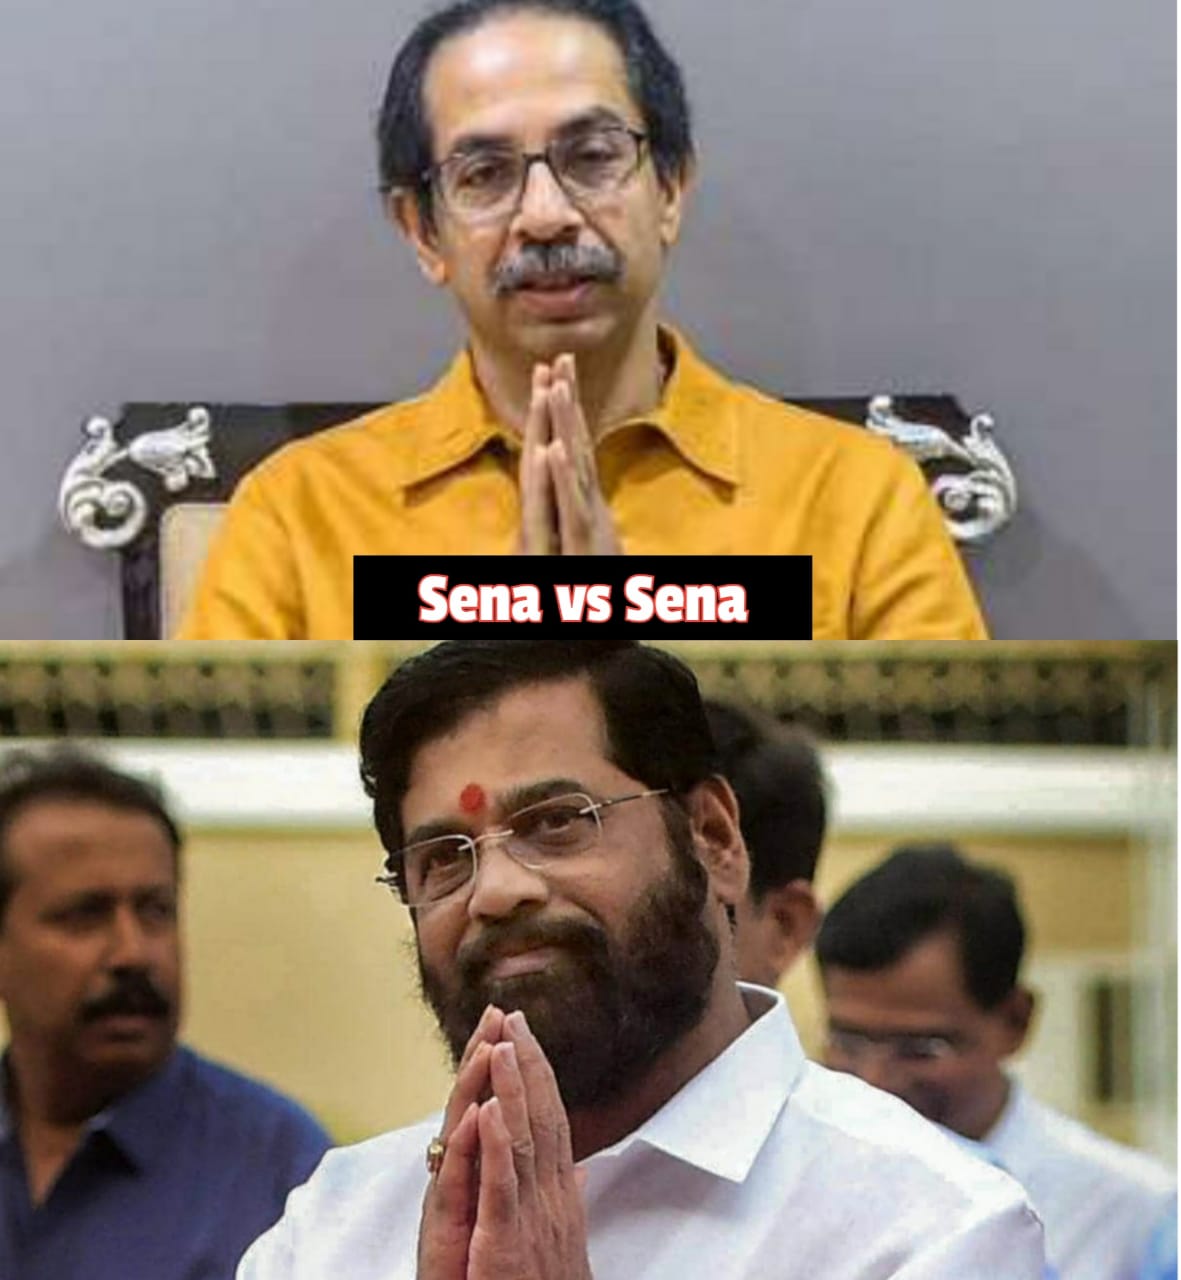 Uddhav Thackeray vs Eknath shinde